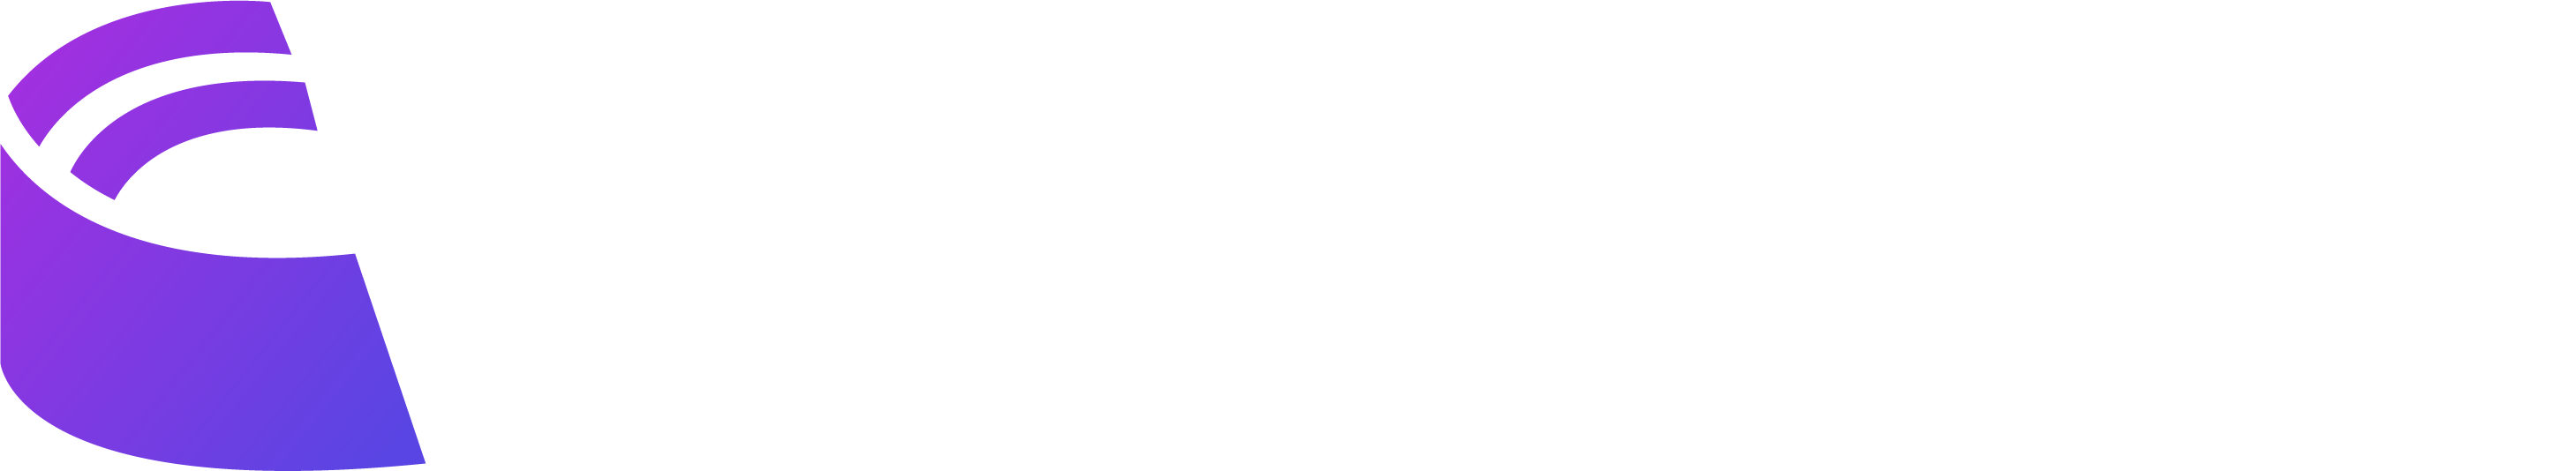 Colyseus - Multiplayer Framework for Node.js